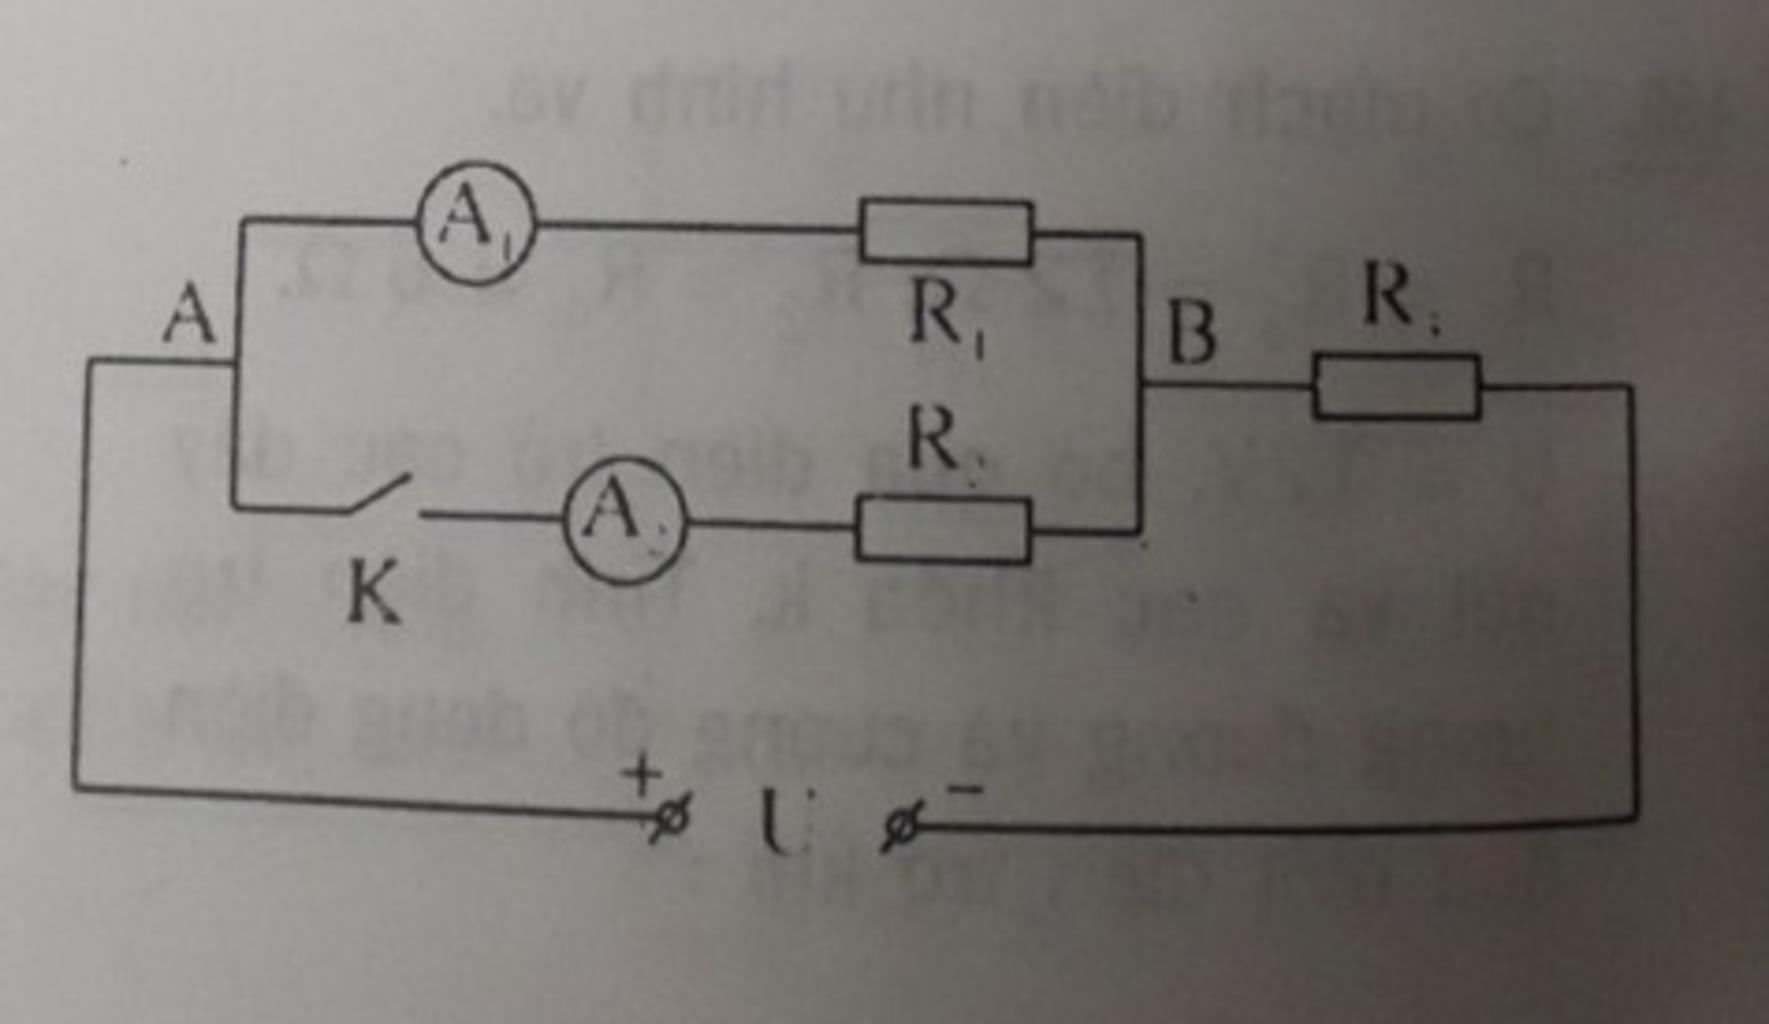 Bỏ qua điện trở dây nối, tính giá trị điện trở lớn nhất có thể chọn để giữ cho dòng điện qua mạch điện như hình vẽ là 2A?